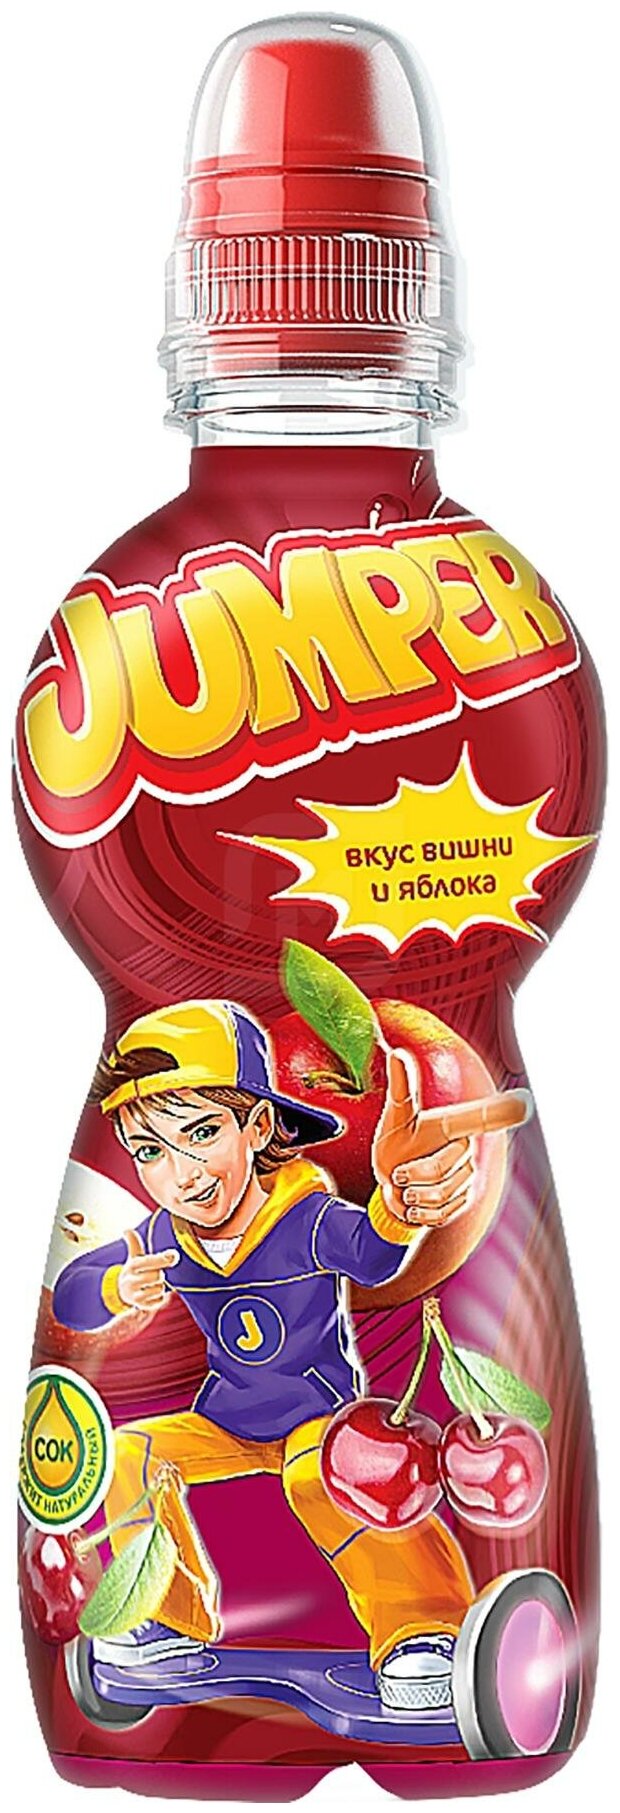 Напиток Jumper со вкусом Вишни и Яблока 330мл - фото №1